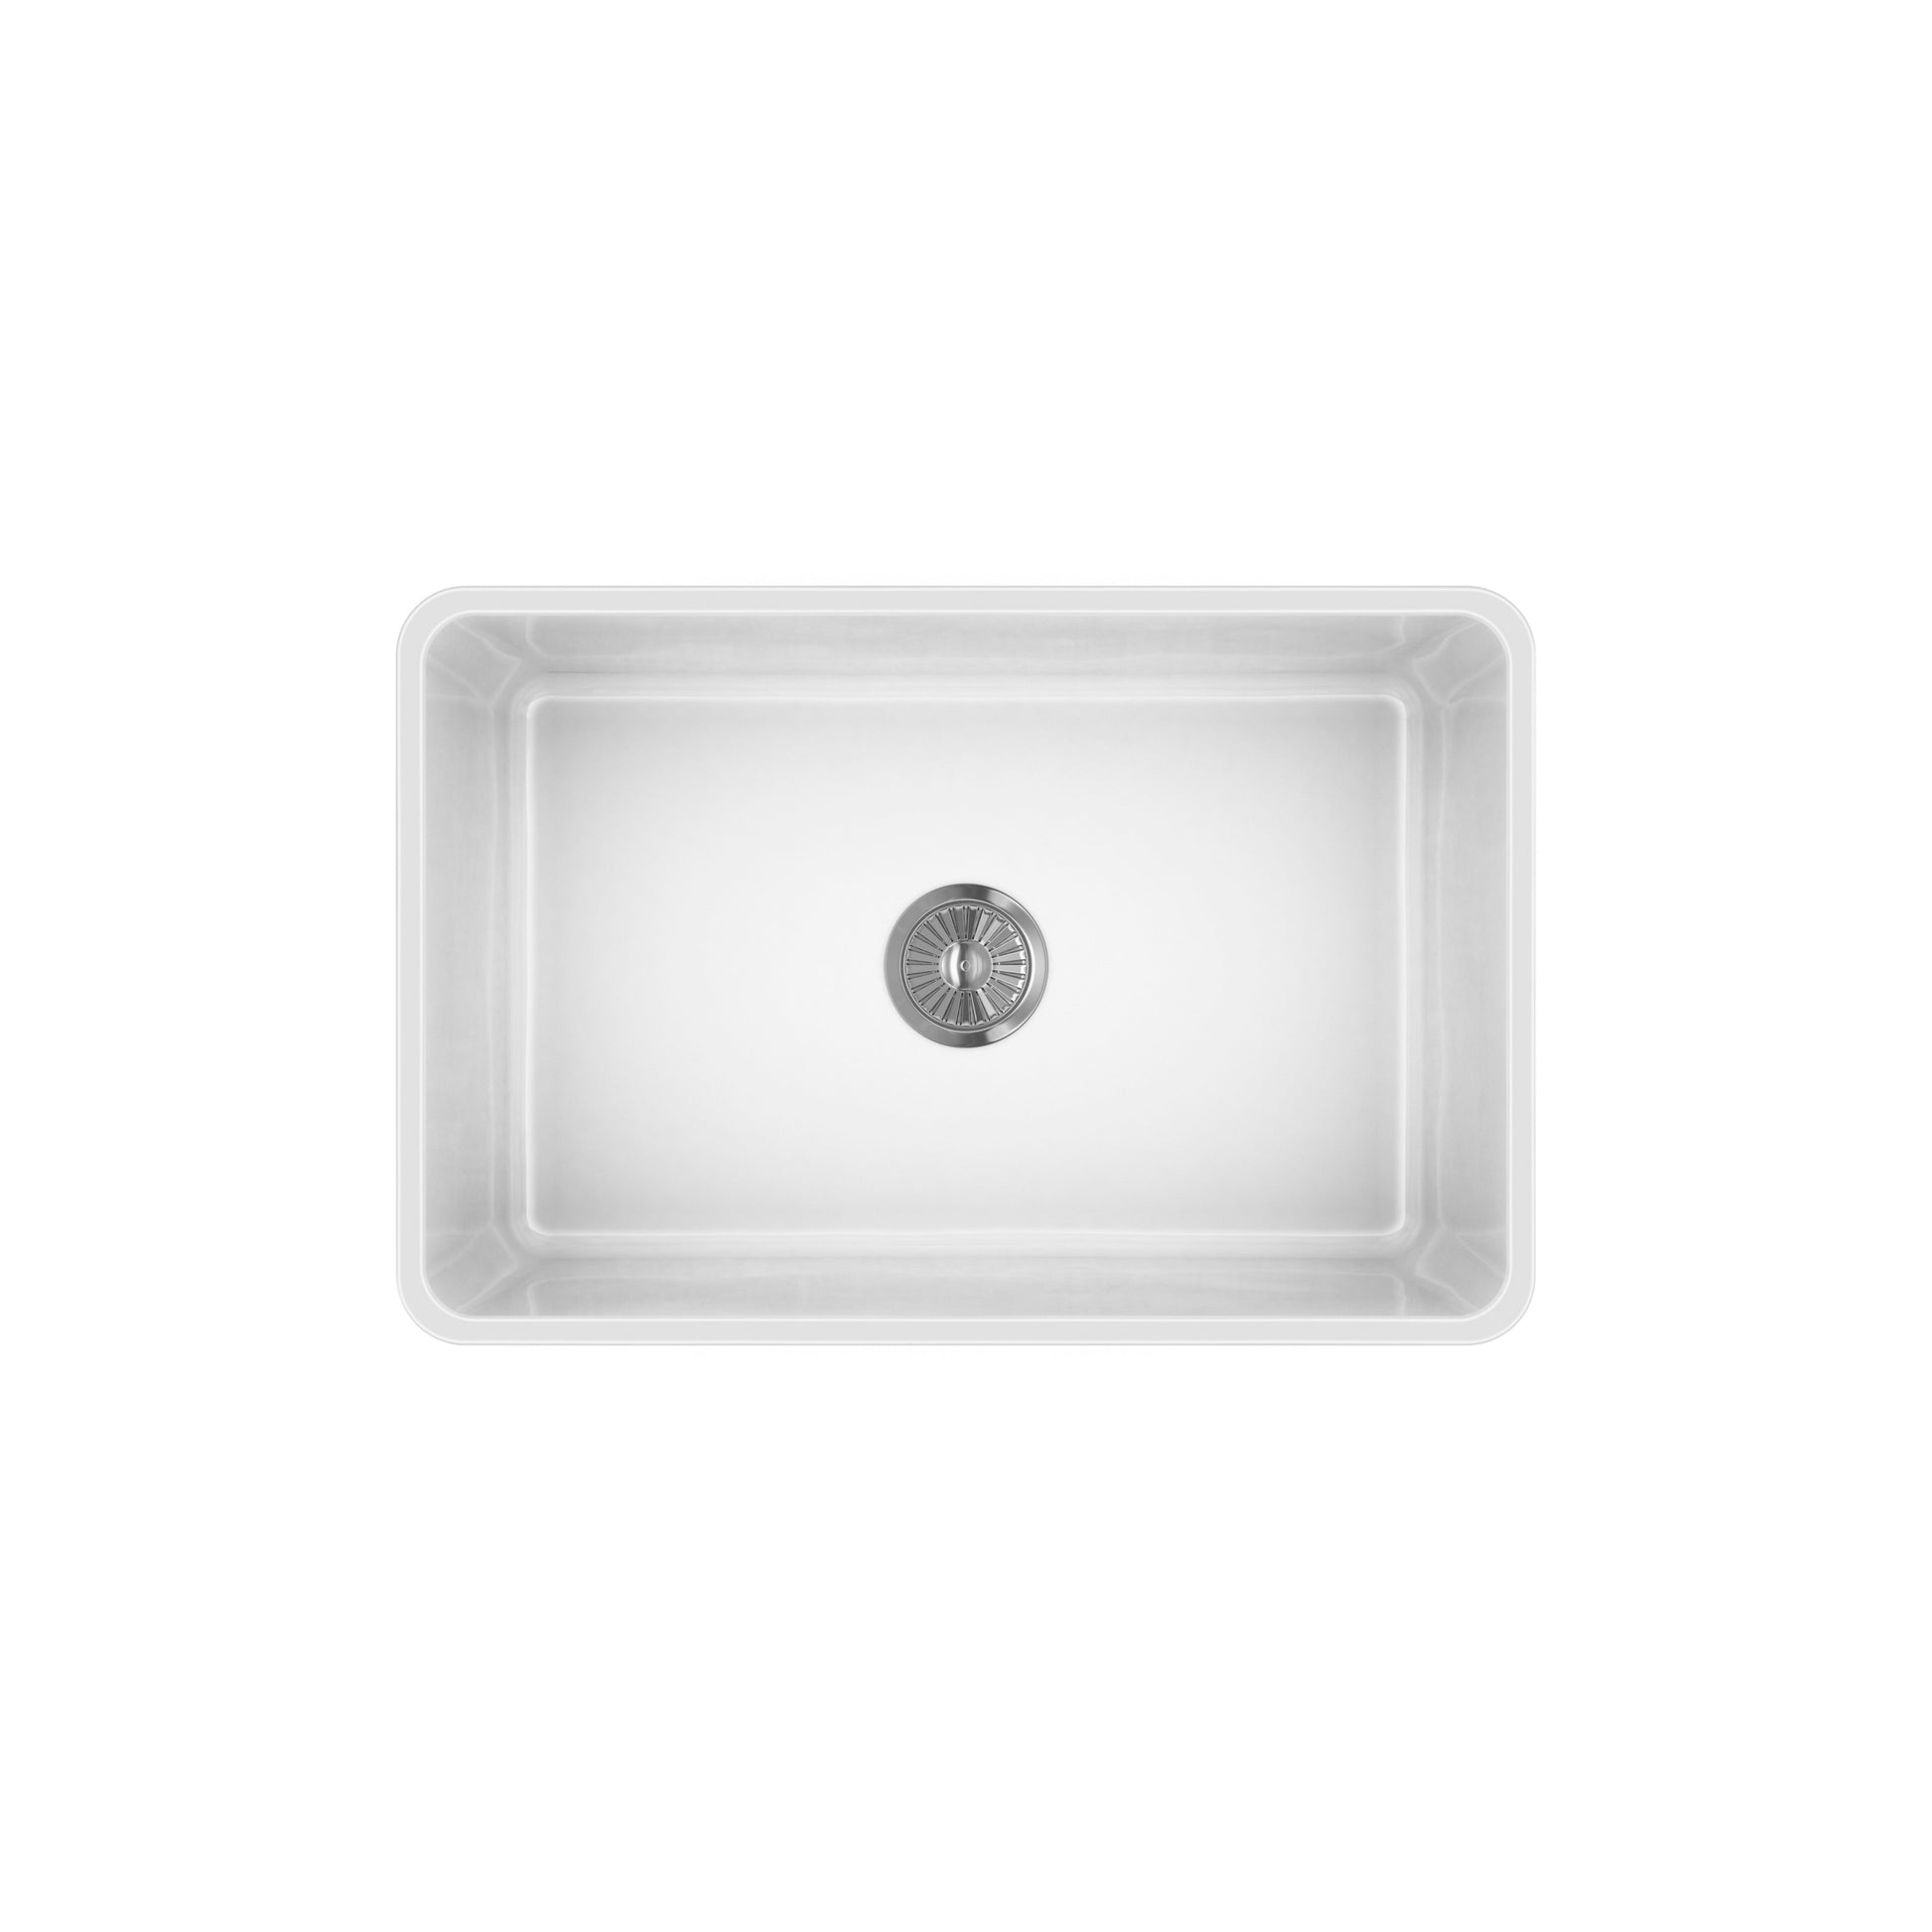 LaToscana 27" White Single Bowl Farmhouse Apron-Front Reversible Fireclay Rectangular Kitchen Sink